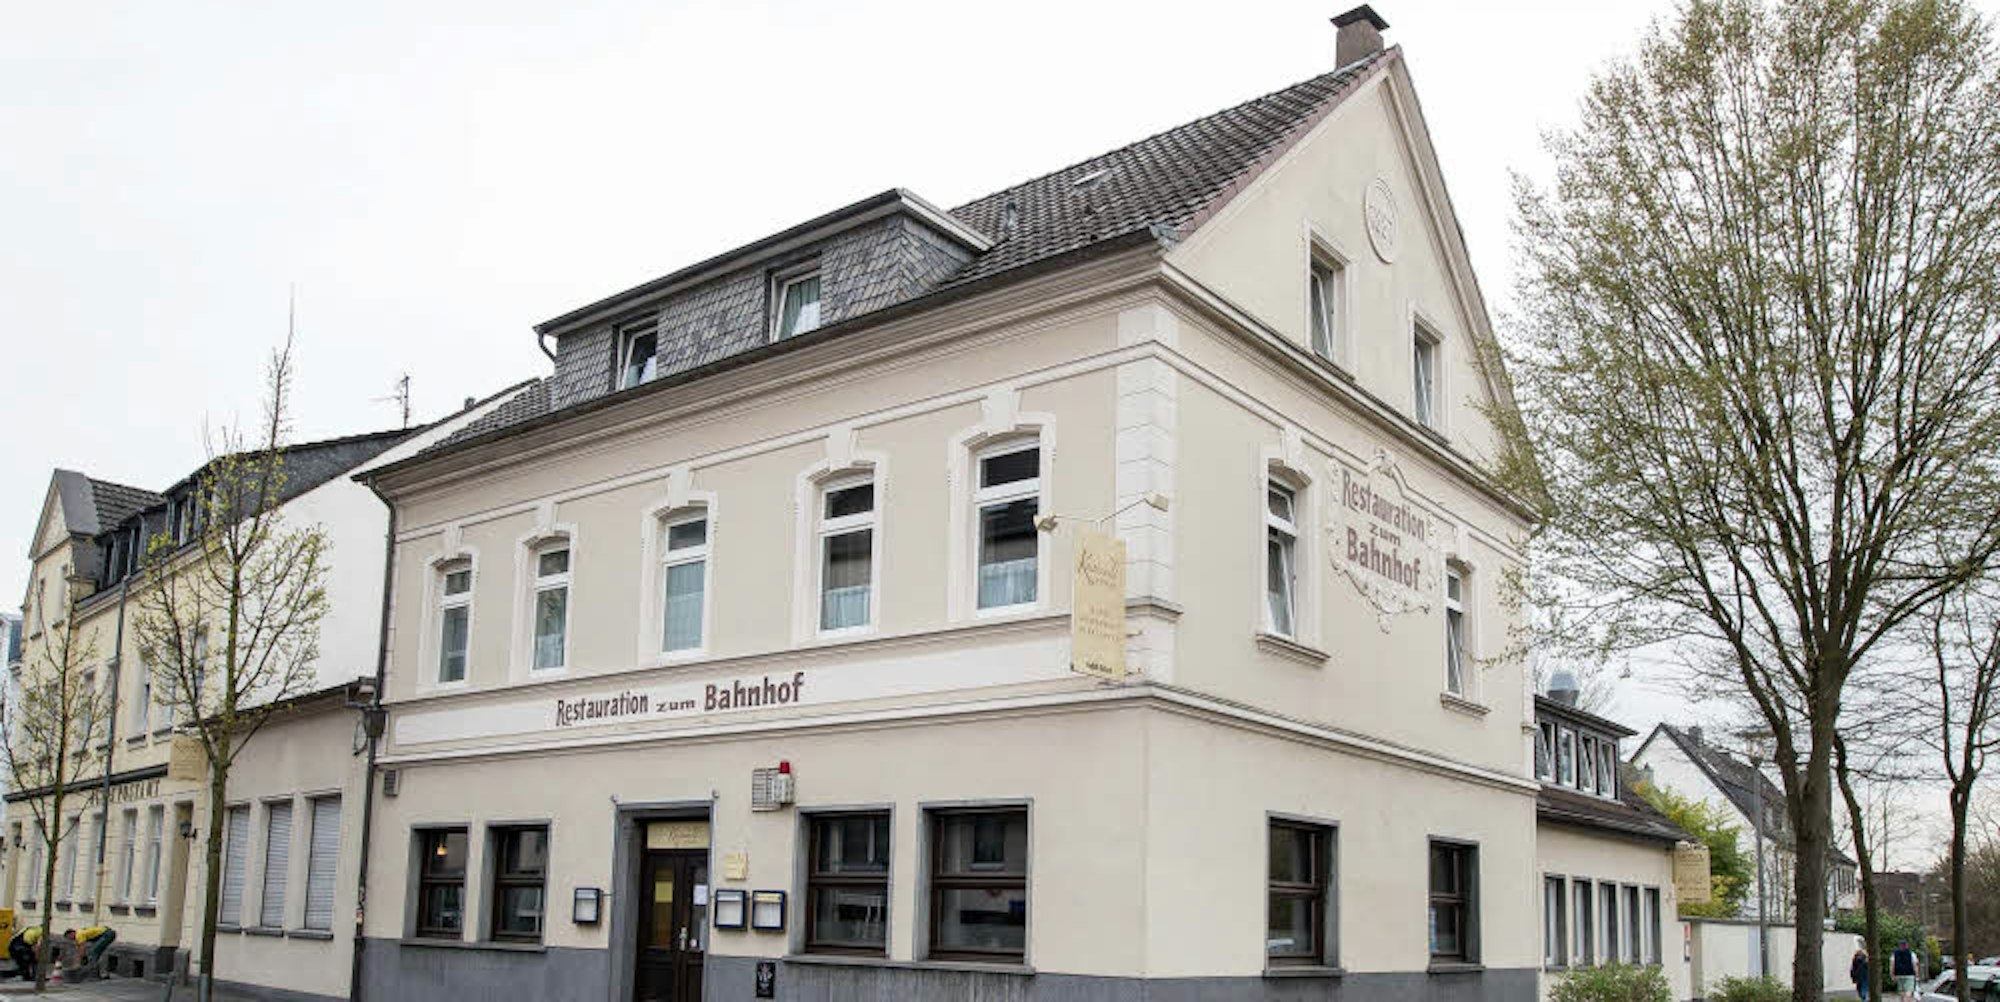 Das Hotel „Restauration zum Bahnhof“ in Dellbrück: Lief bei der Auftragsvergabe an Betreiberin Andrea Horitzky alles korrekt ab?